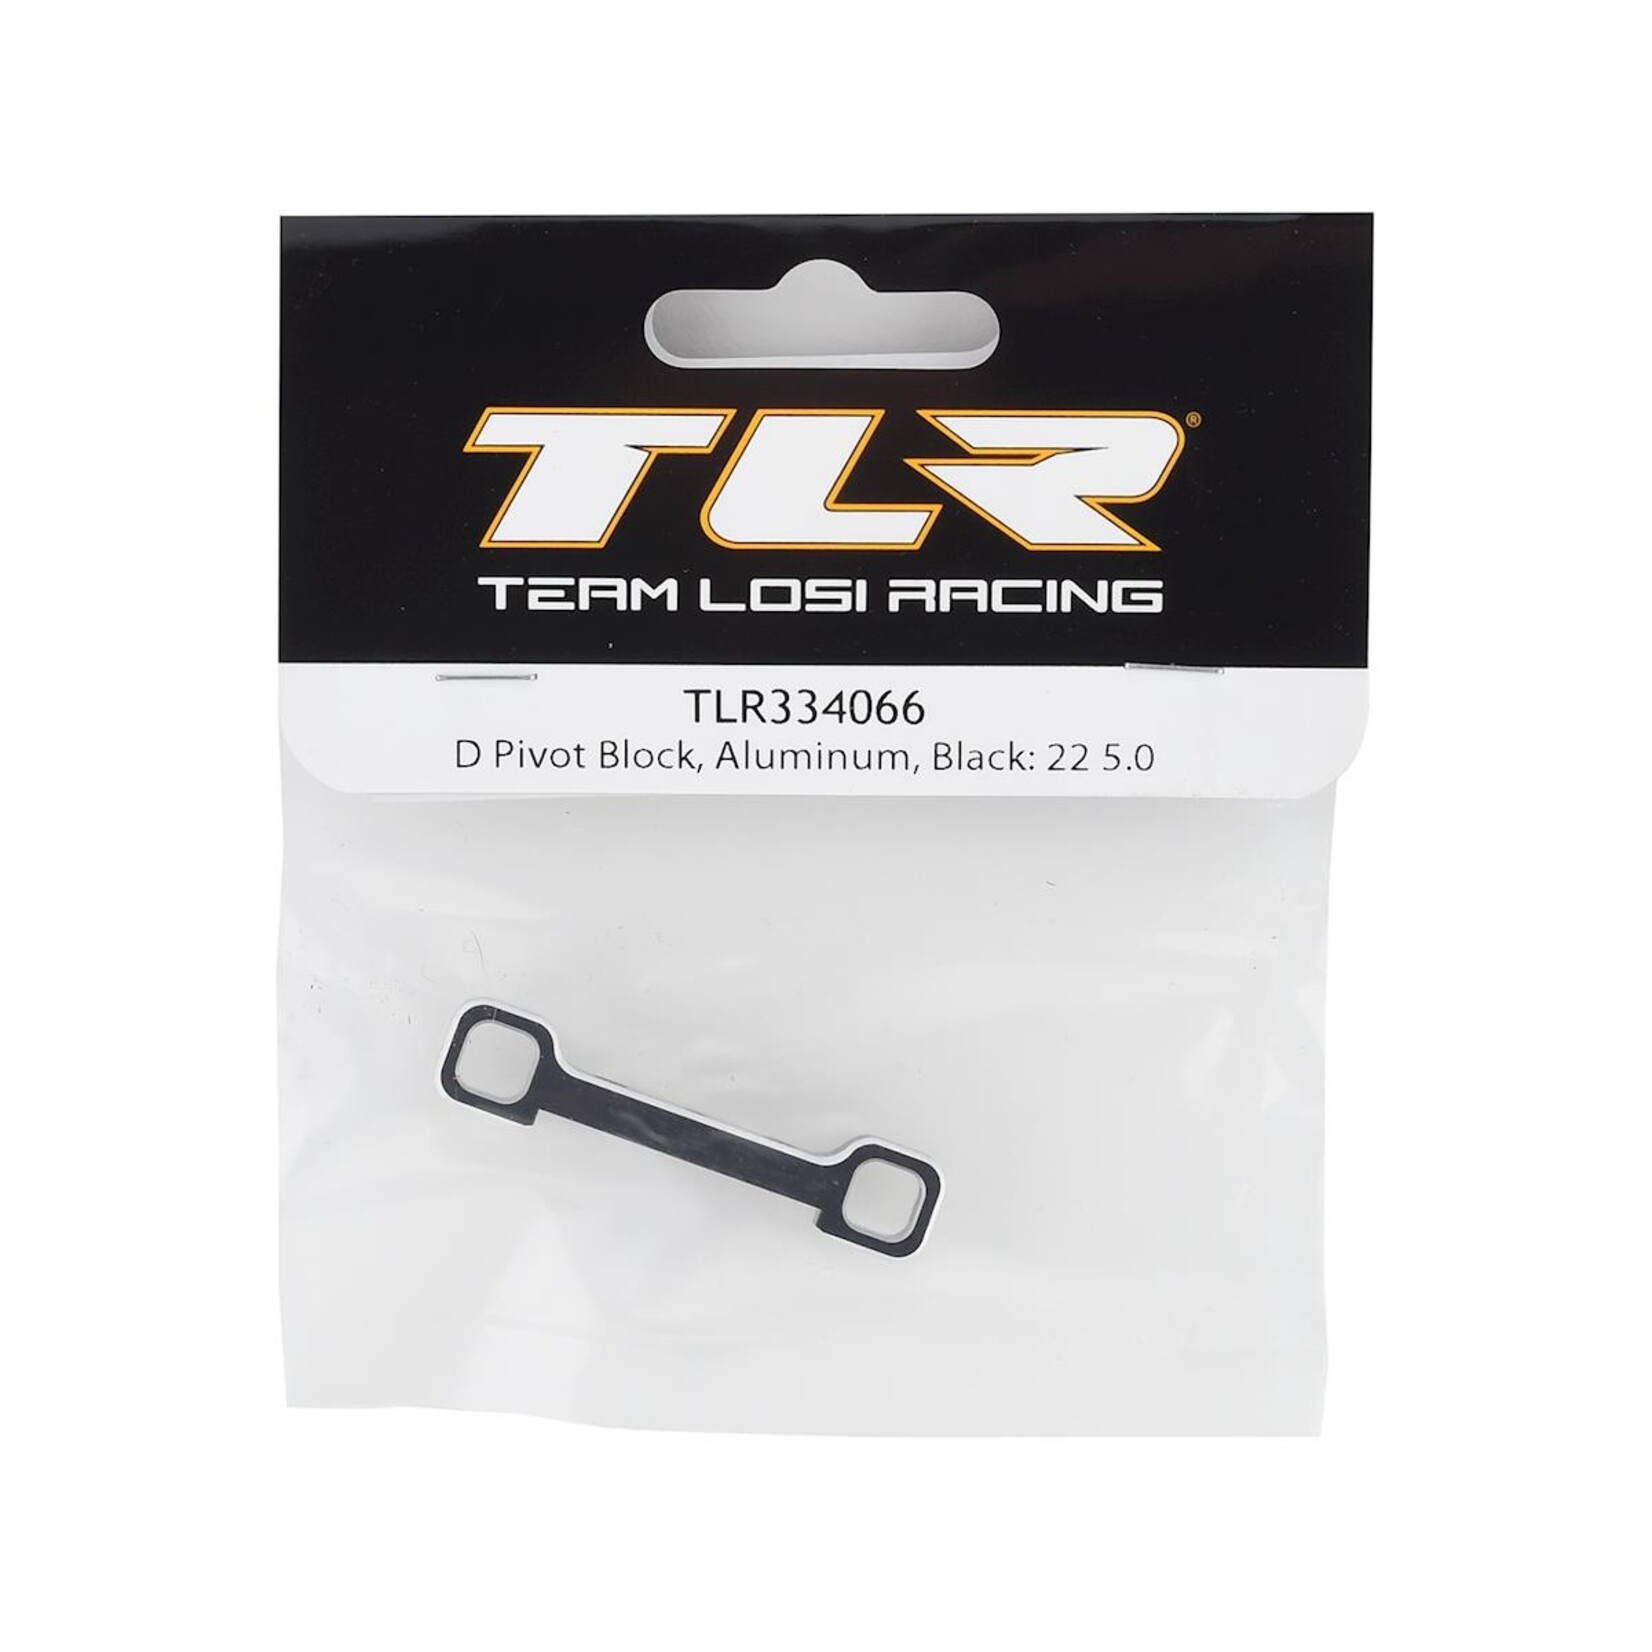 TLR Team Losi Racing 22 5.0 Aluminum "D" Pivot Block (Black) #TLR334066